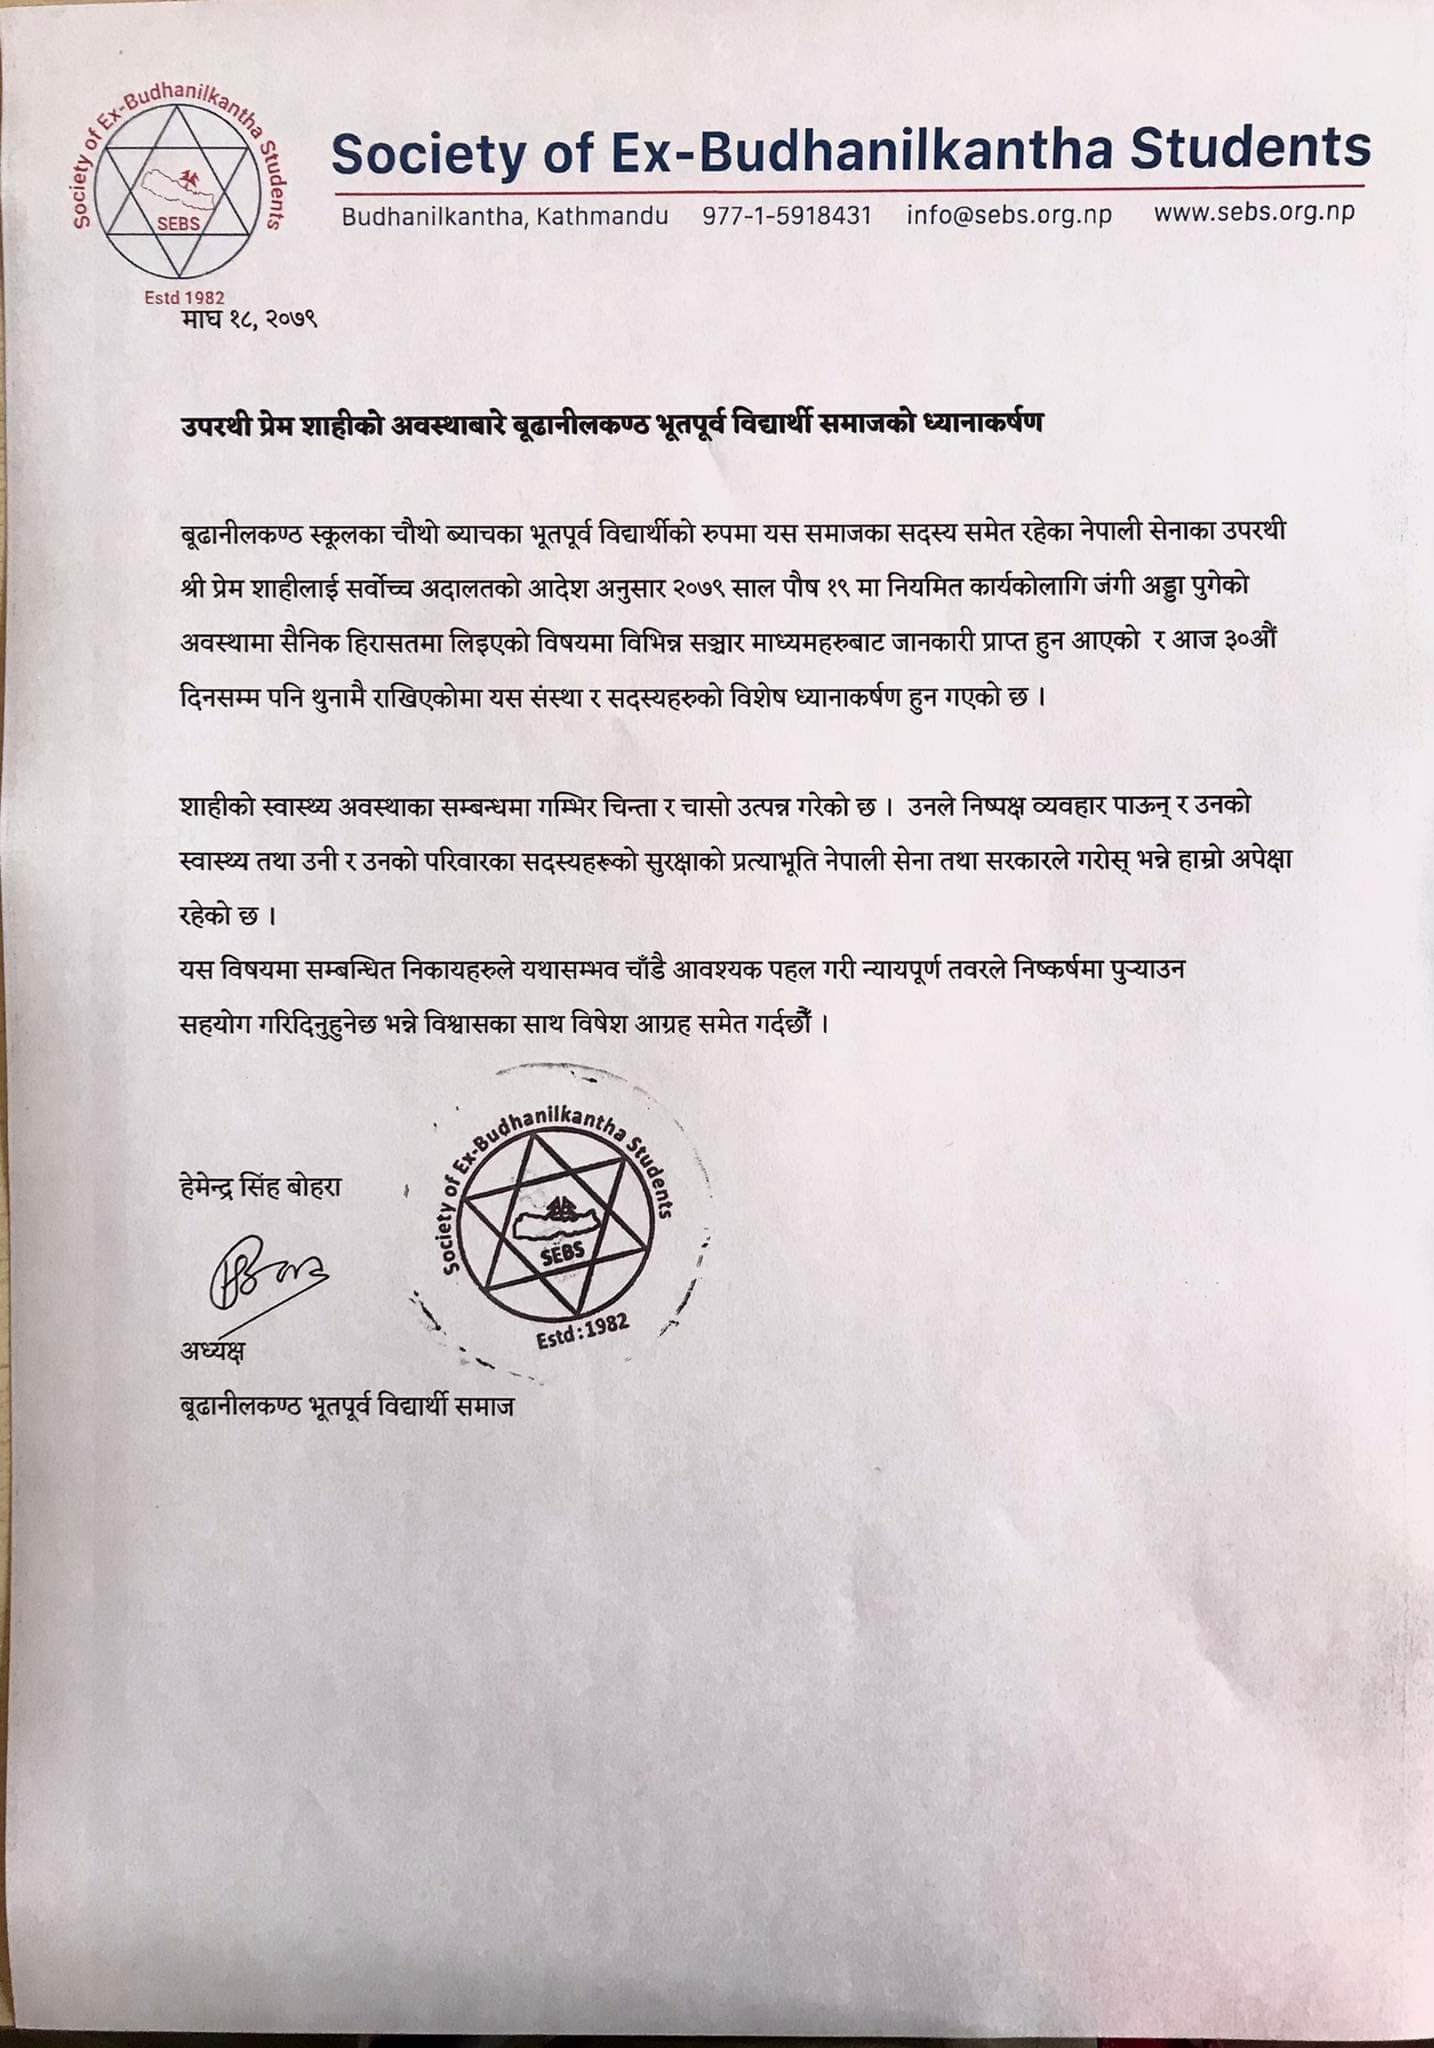 Statement on behalf of Major General Prem Shahi 425A